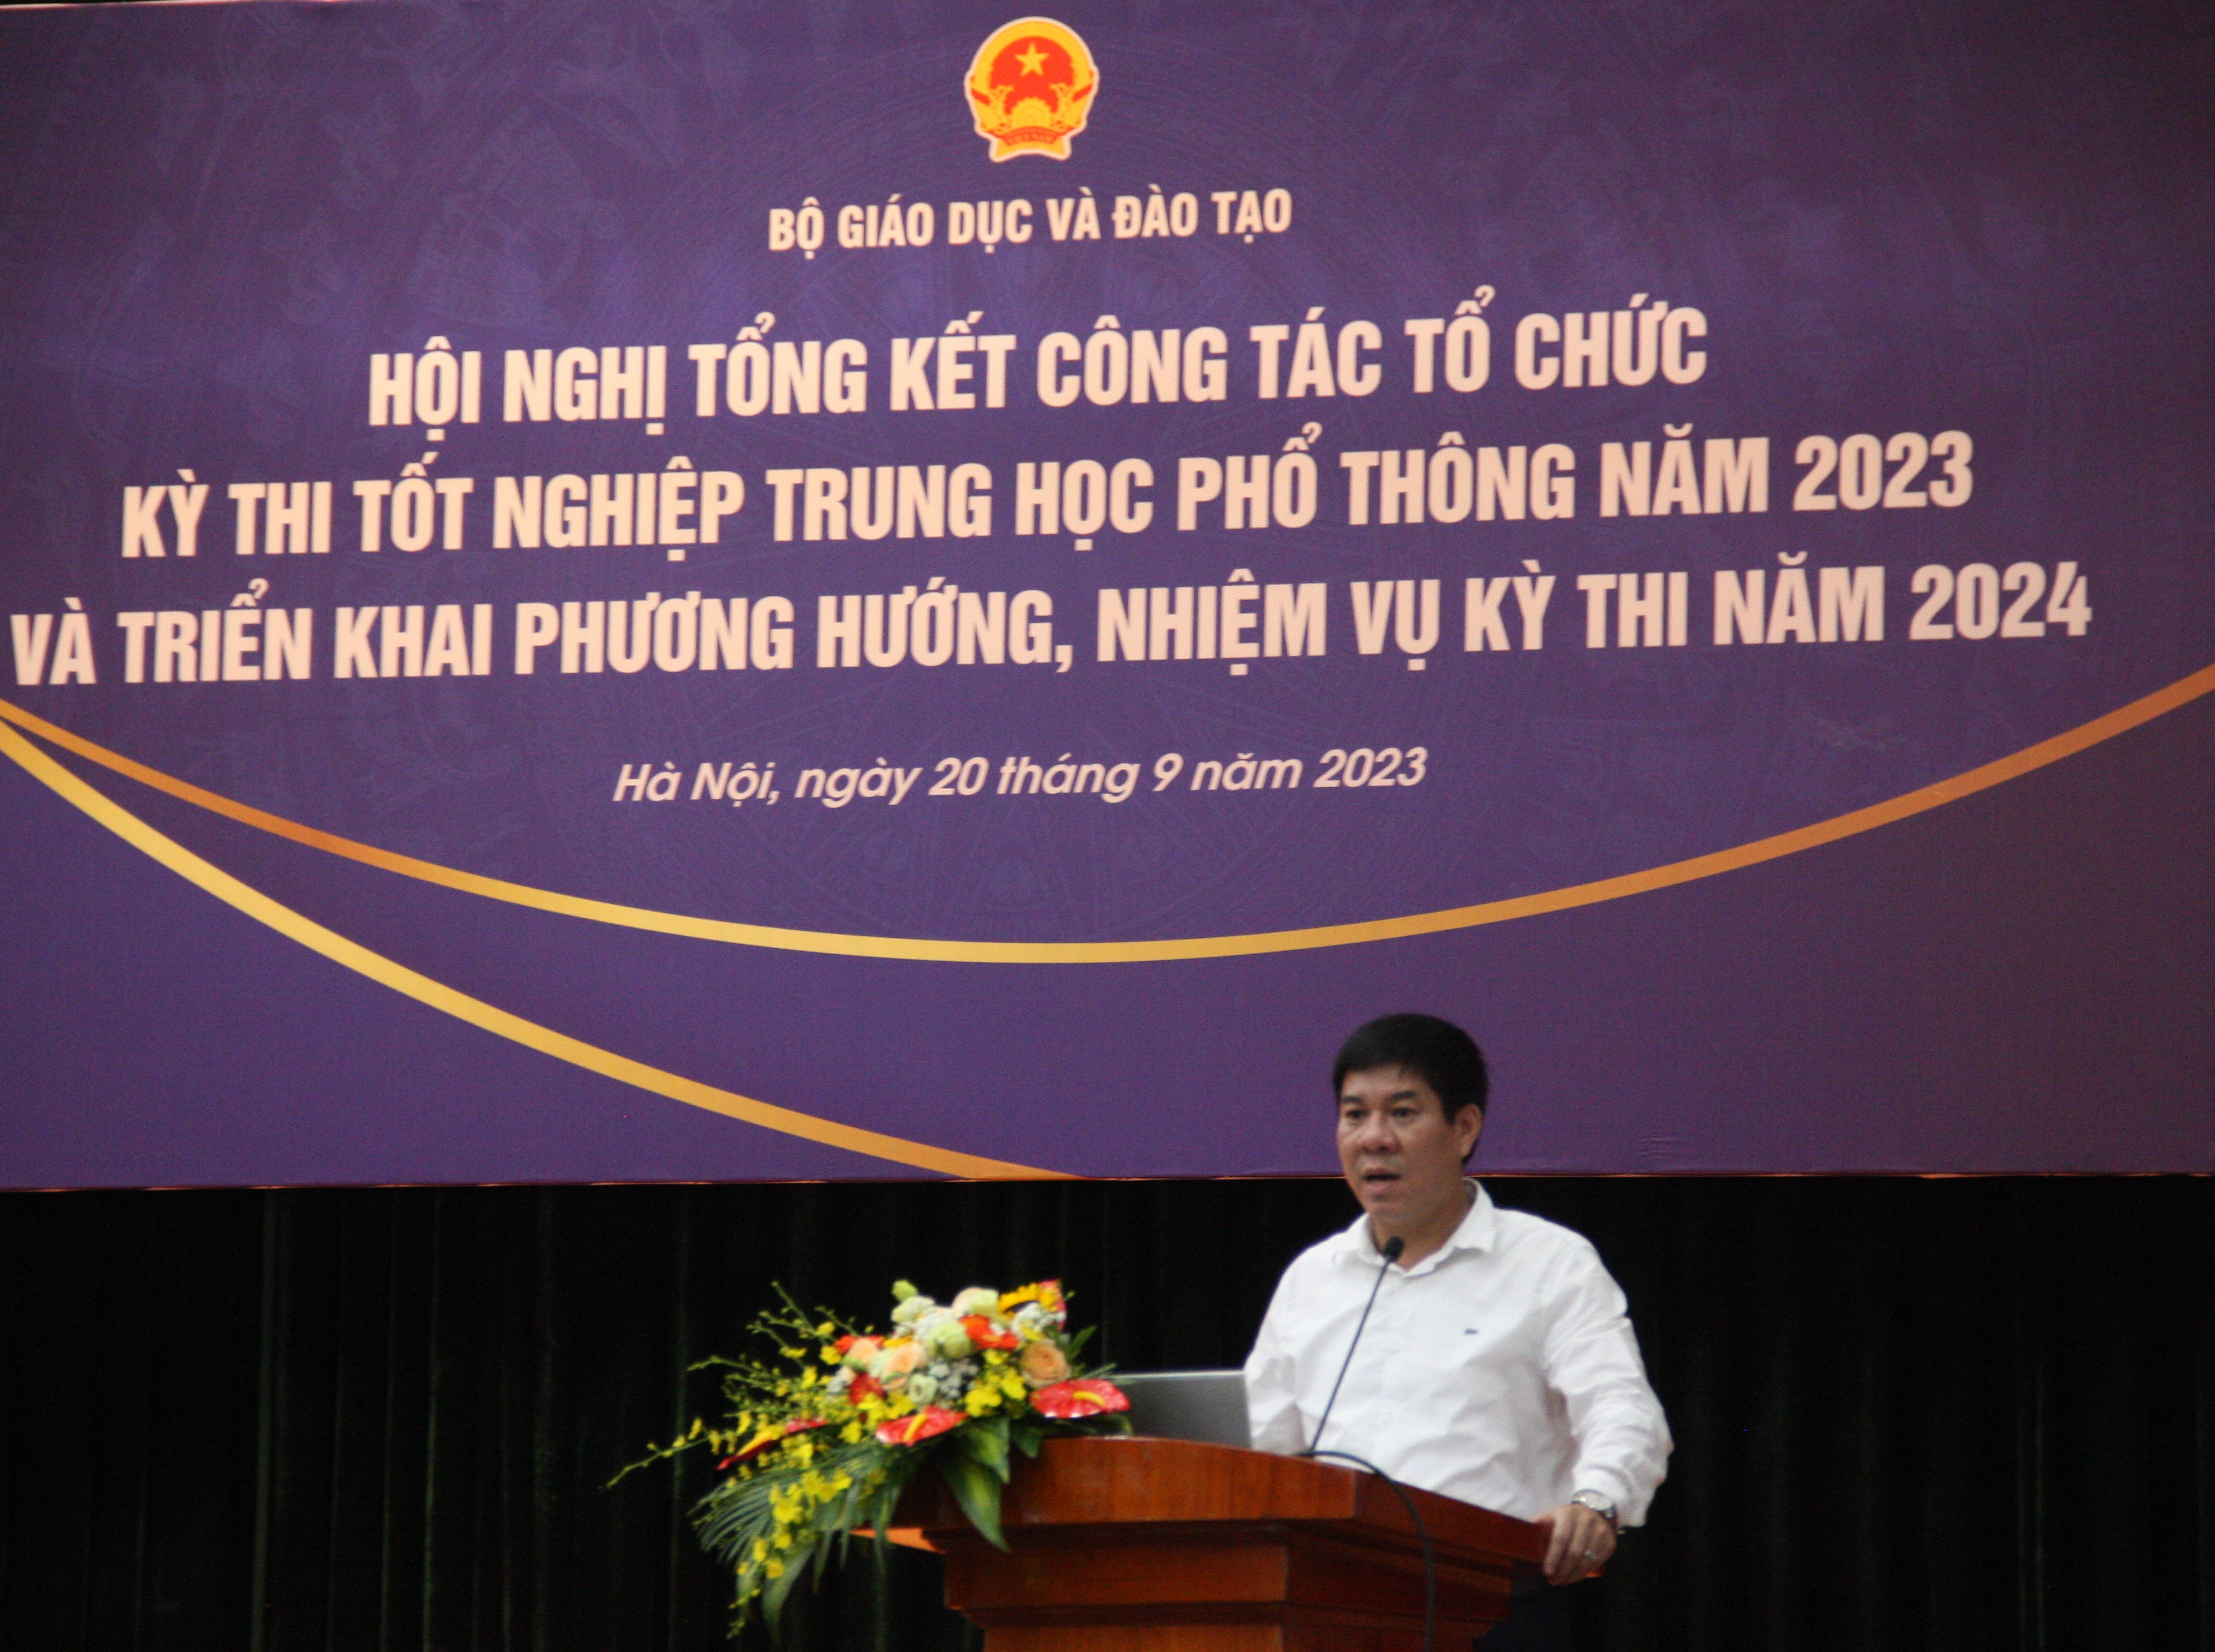 PGS.TS Huỳnh Văn Chương, Cục trưởng Cục Quản lý chất lượng phát biểu tại Hội nghị. ảnh 2